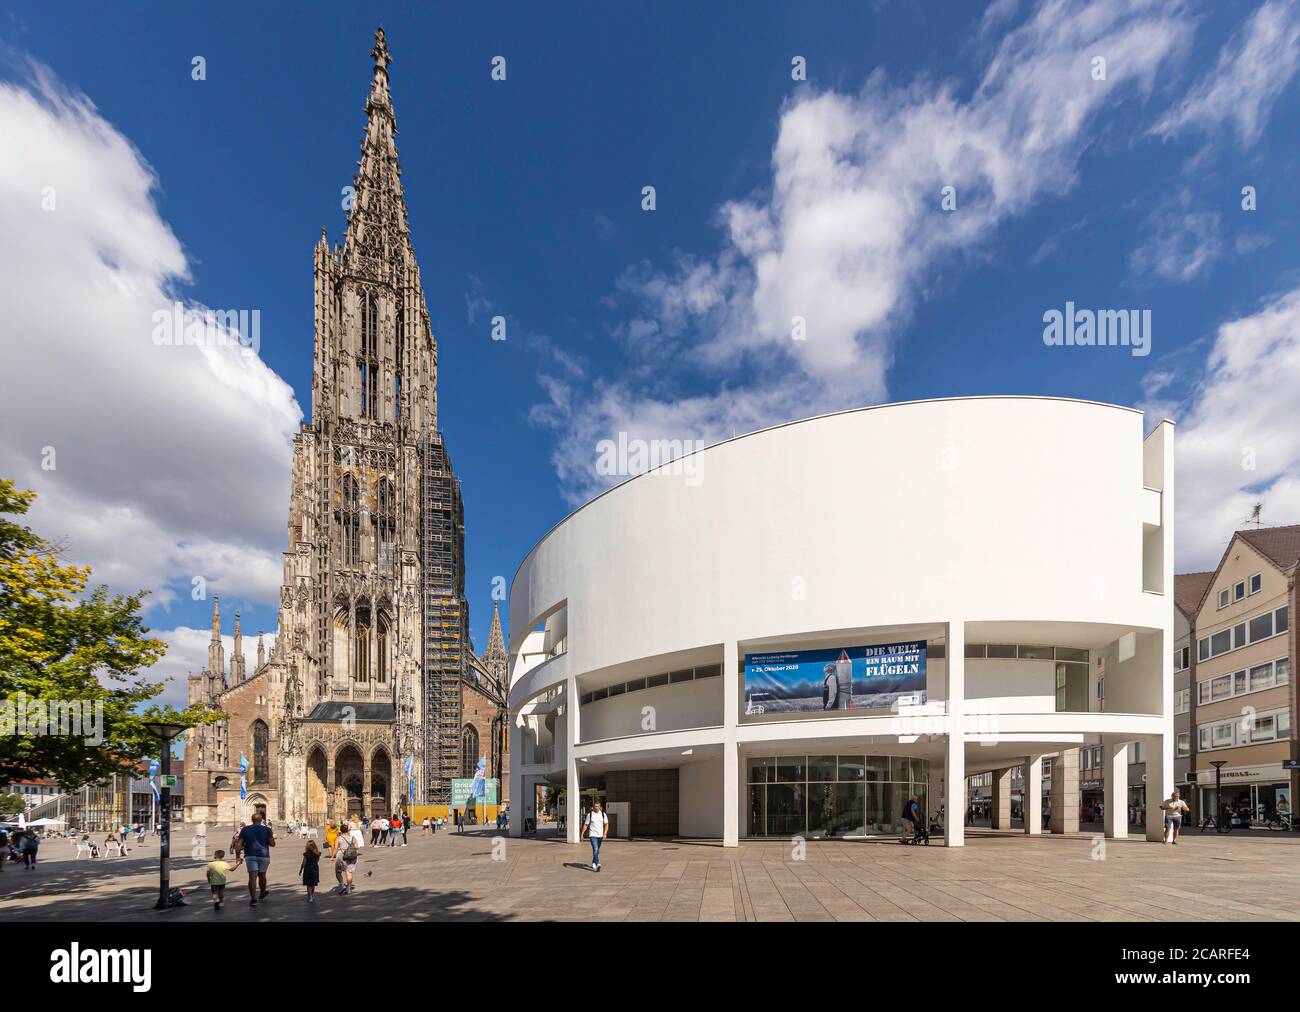 Das gotische Ulmer Münster mit dem höchsten Kirchturm der Welt. Daneben die moderne Bauskulptur Stadthaus, entworfen vom New Yorker Architekt Richard Stock Photo